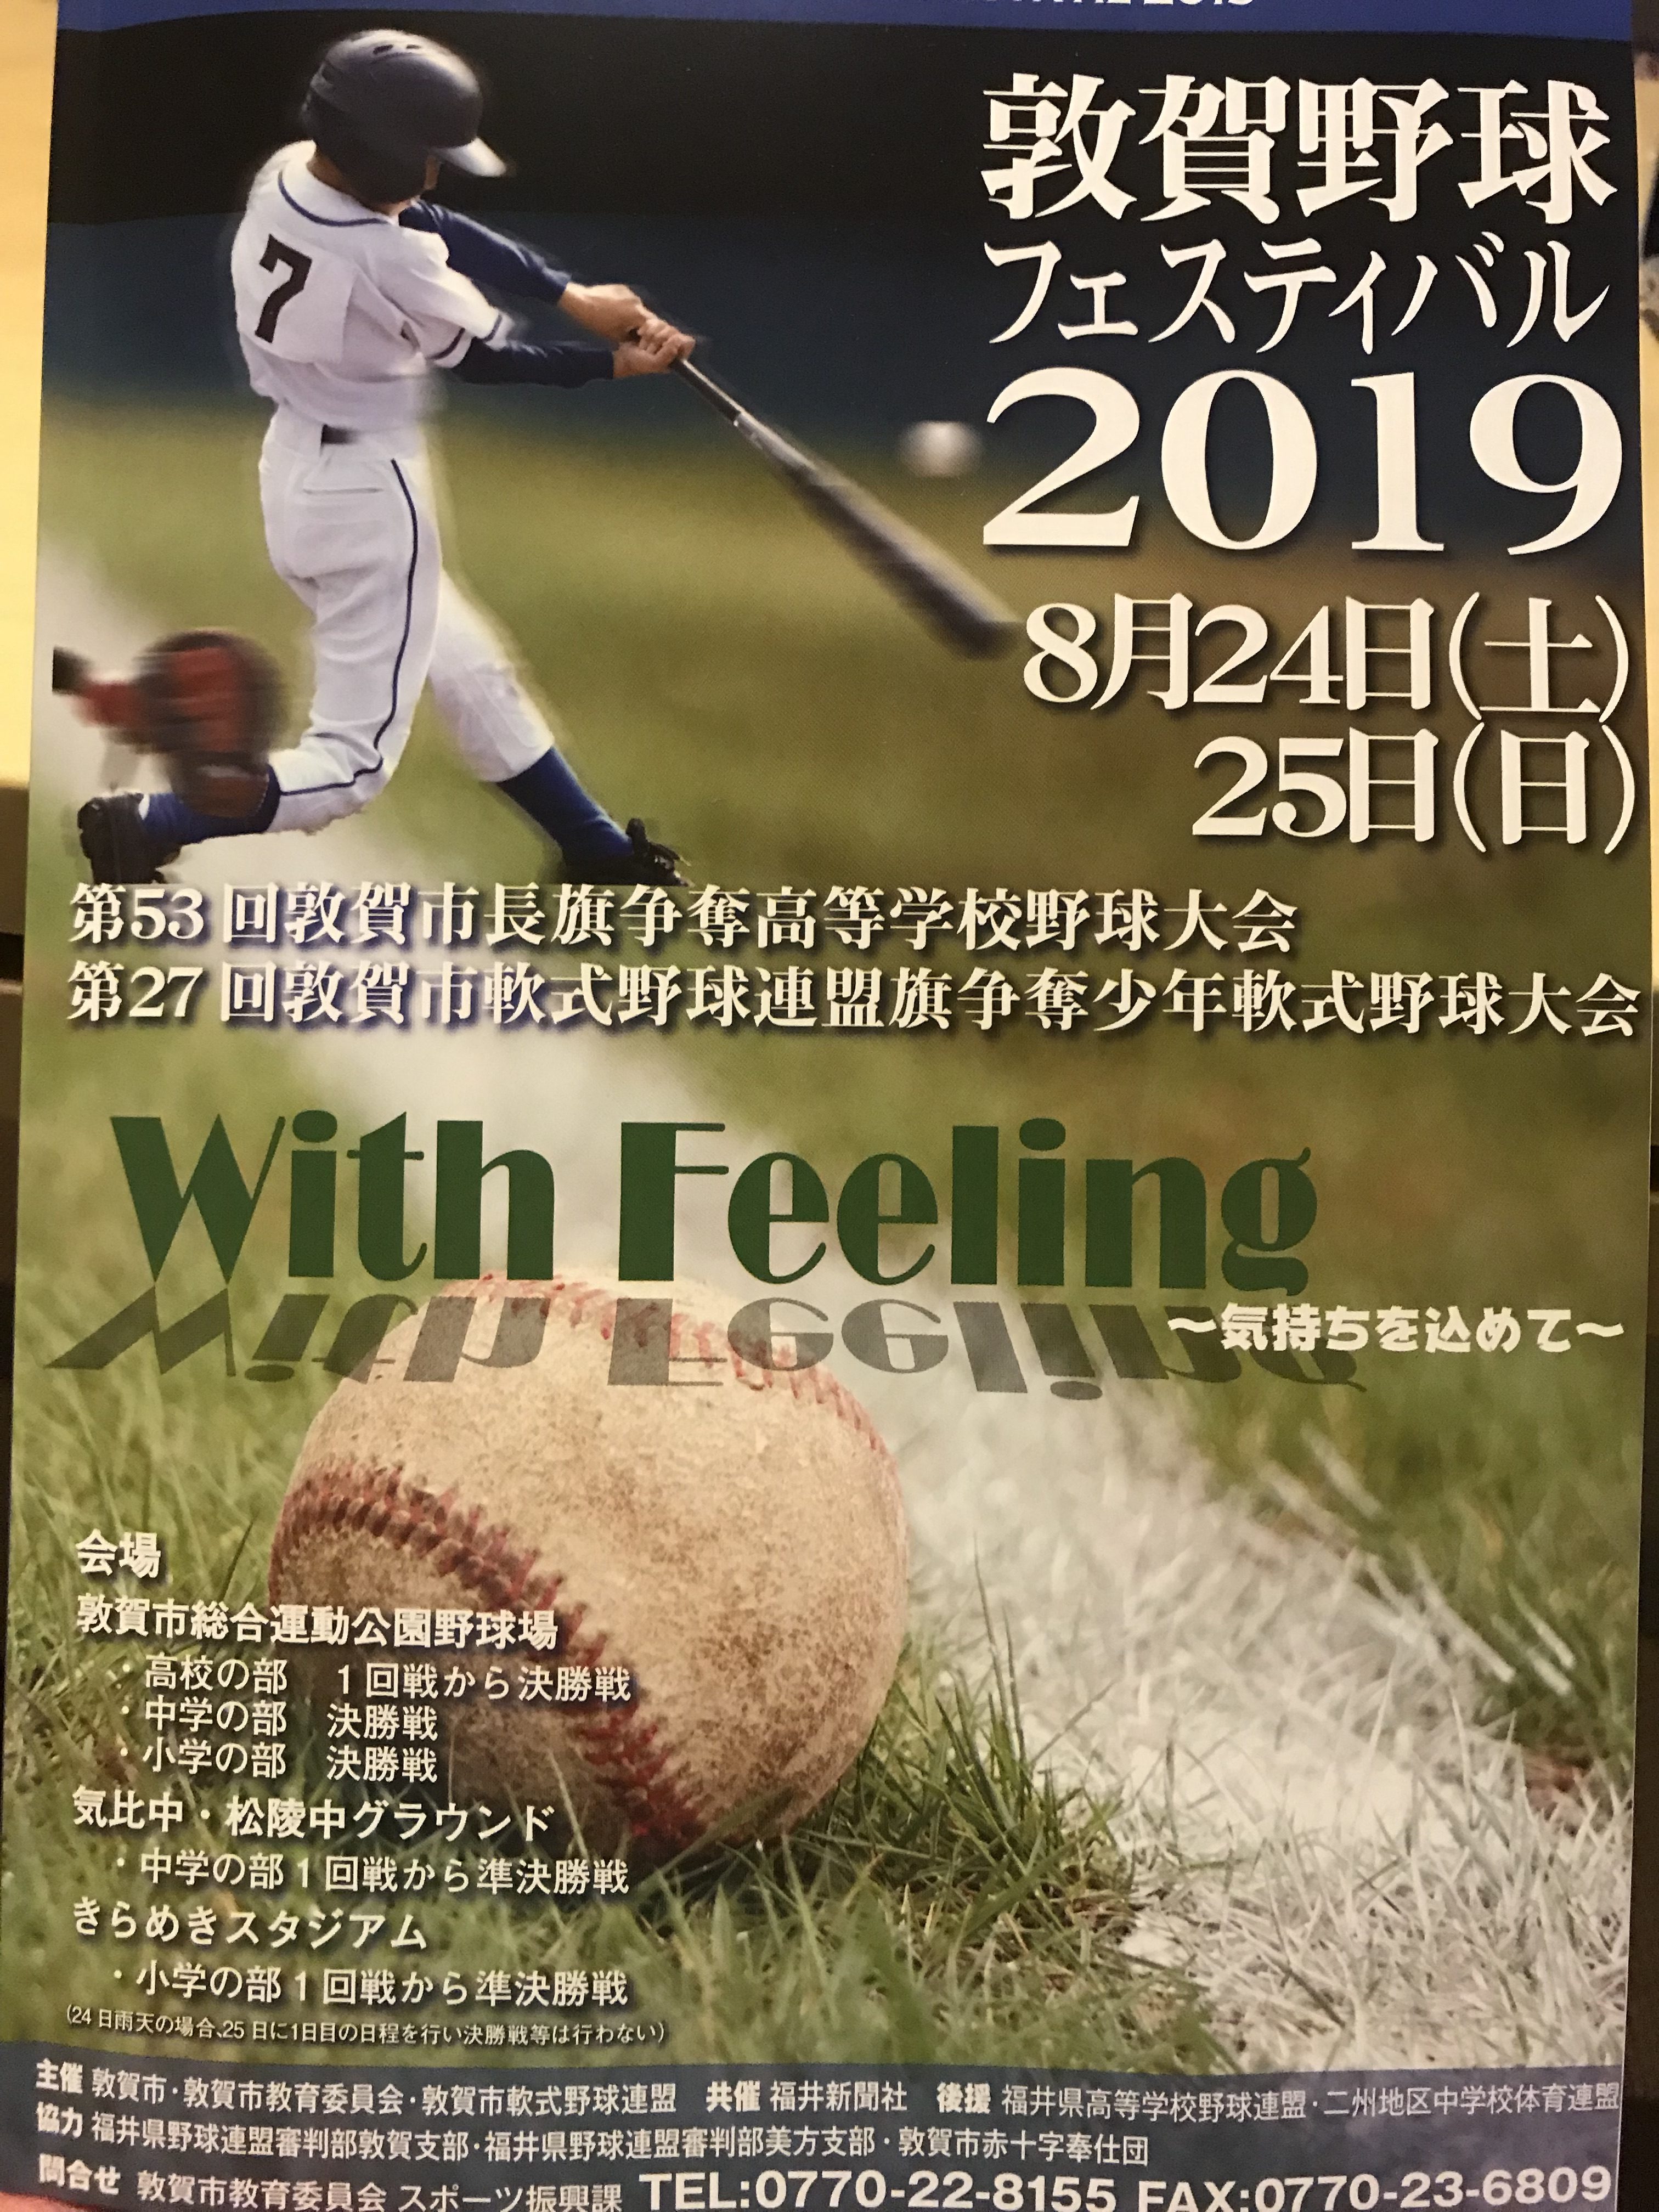 福井 県 高校 野球 2019